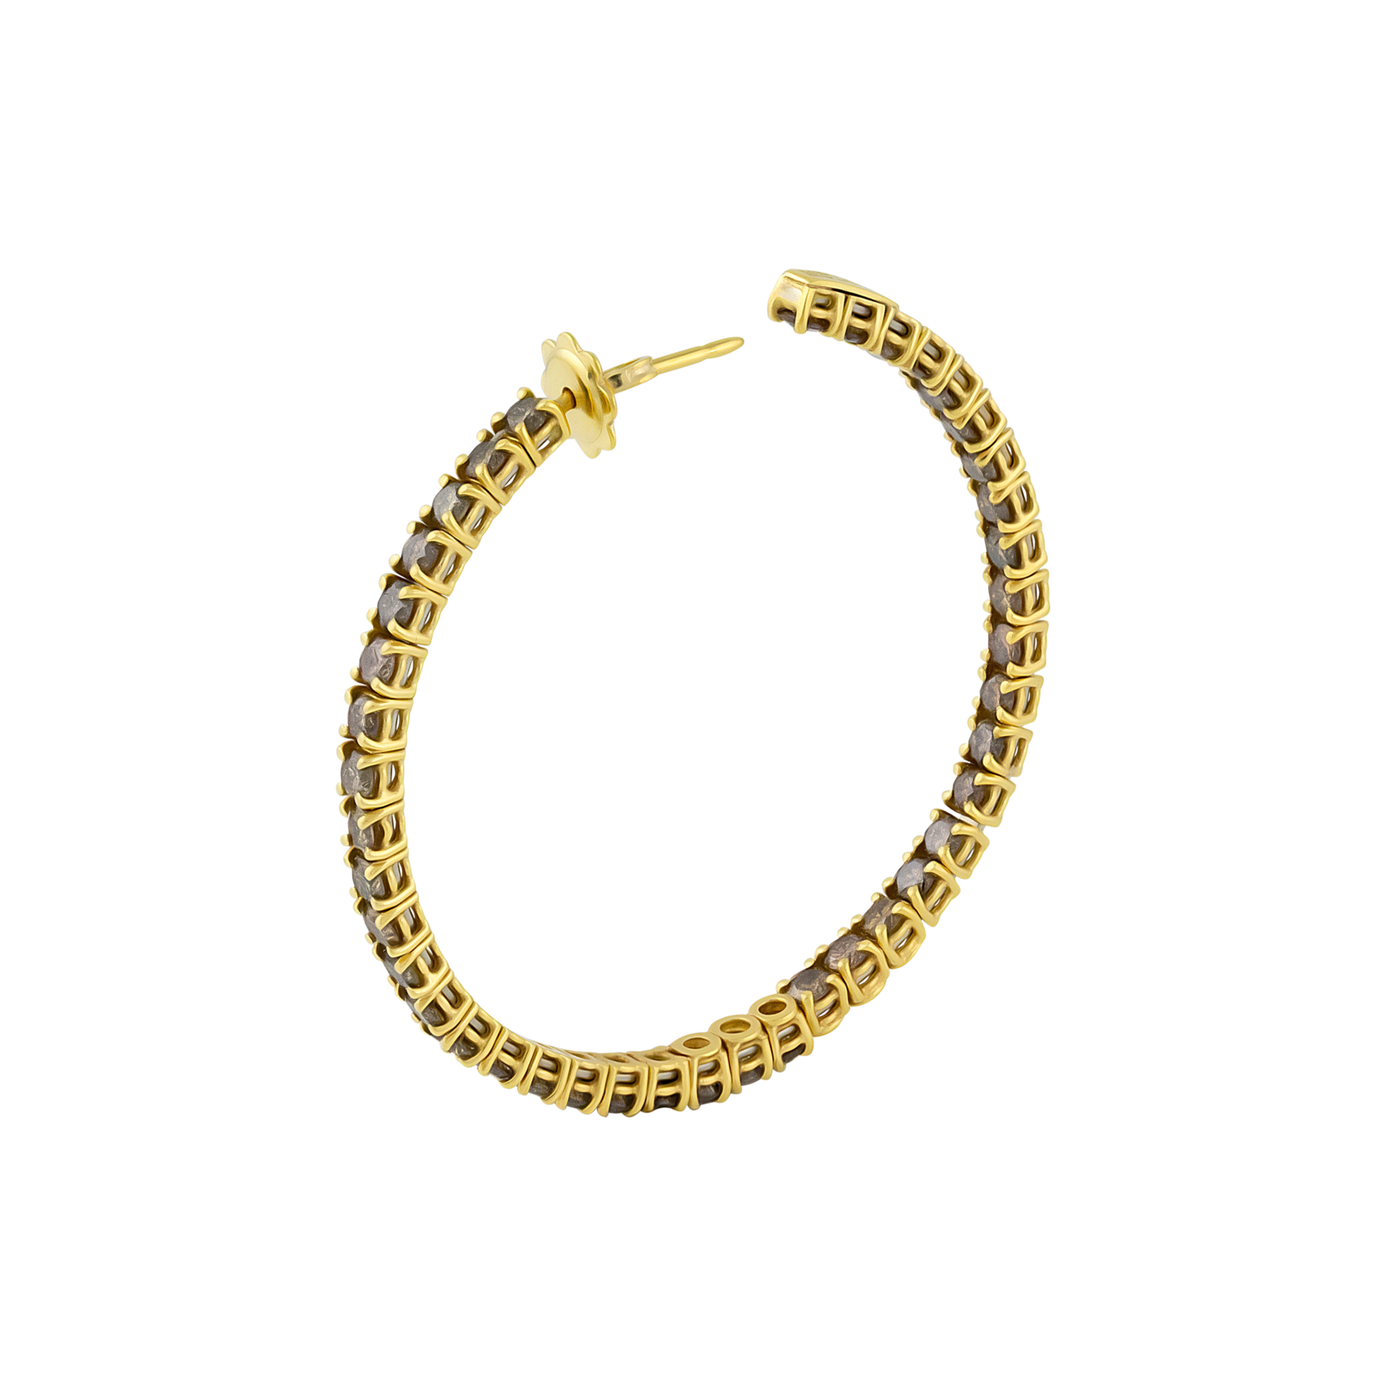 Stefan Hafner 18K Yellow Gold Diamond Earrings